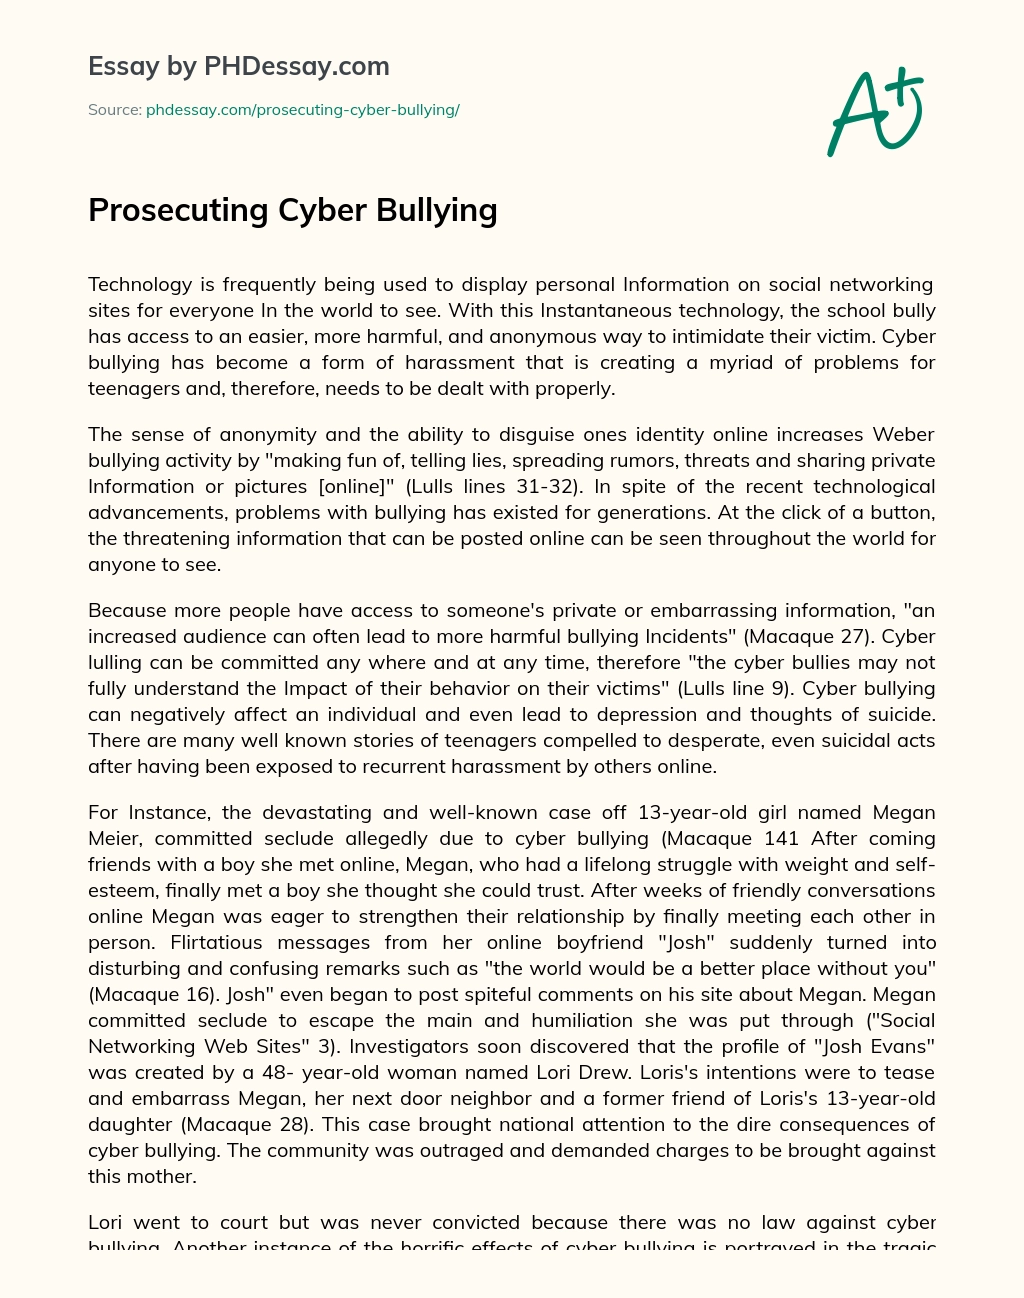 Prosecuting Cyber Bullying essay